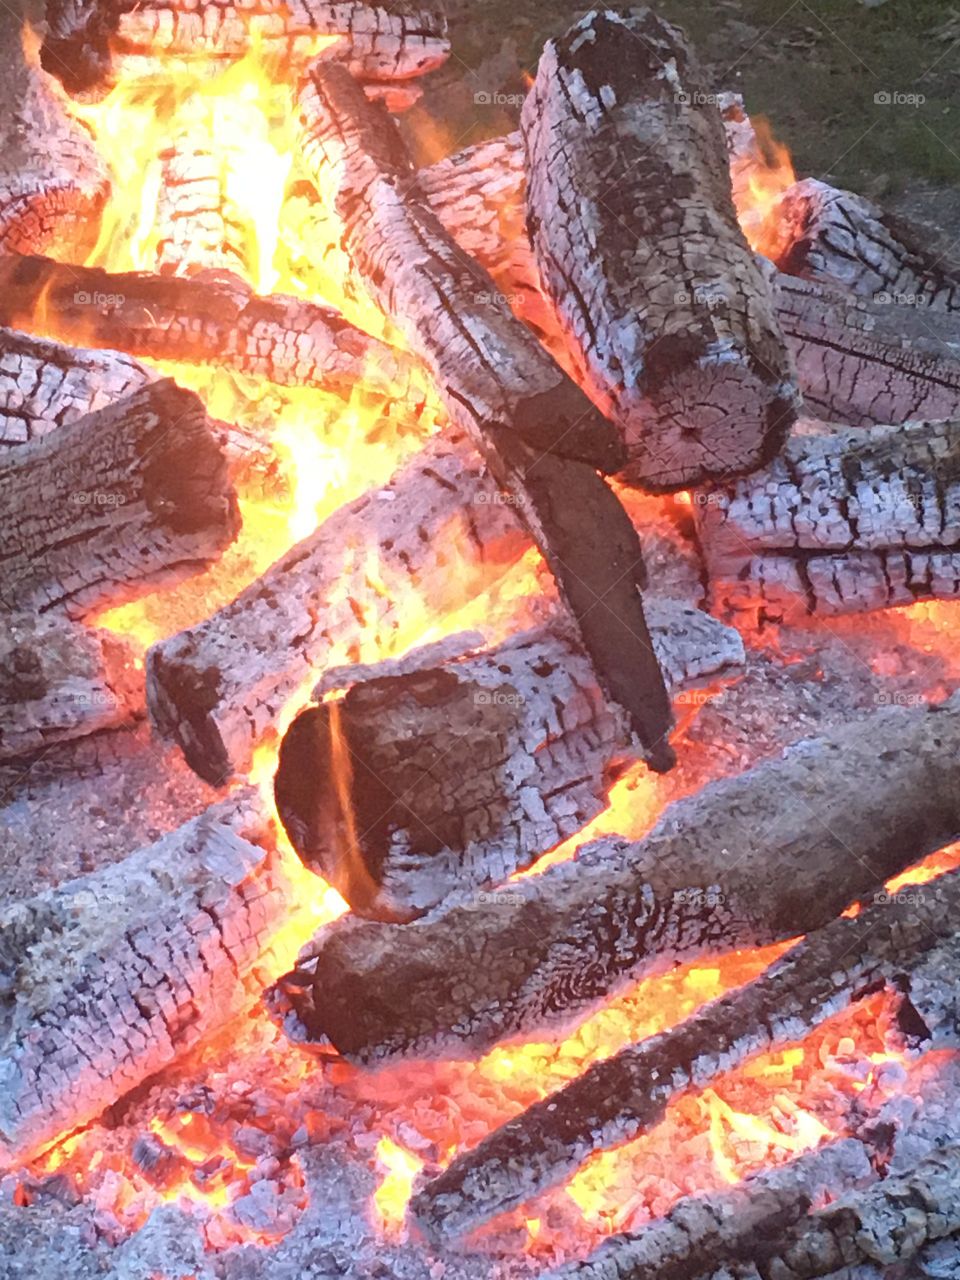 Our bonfire 